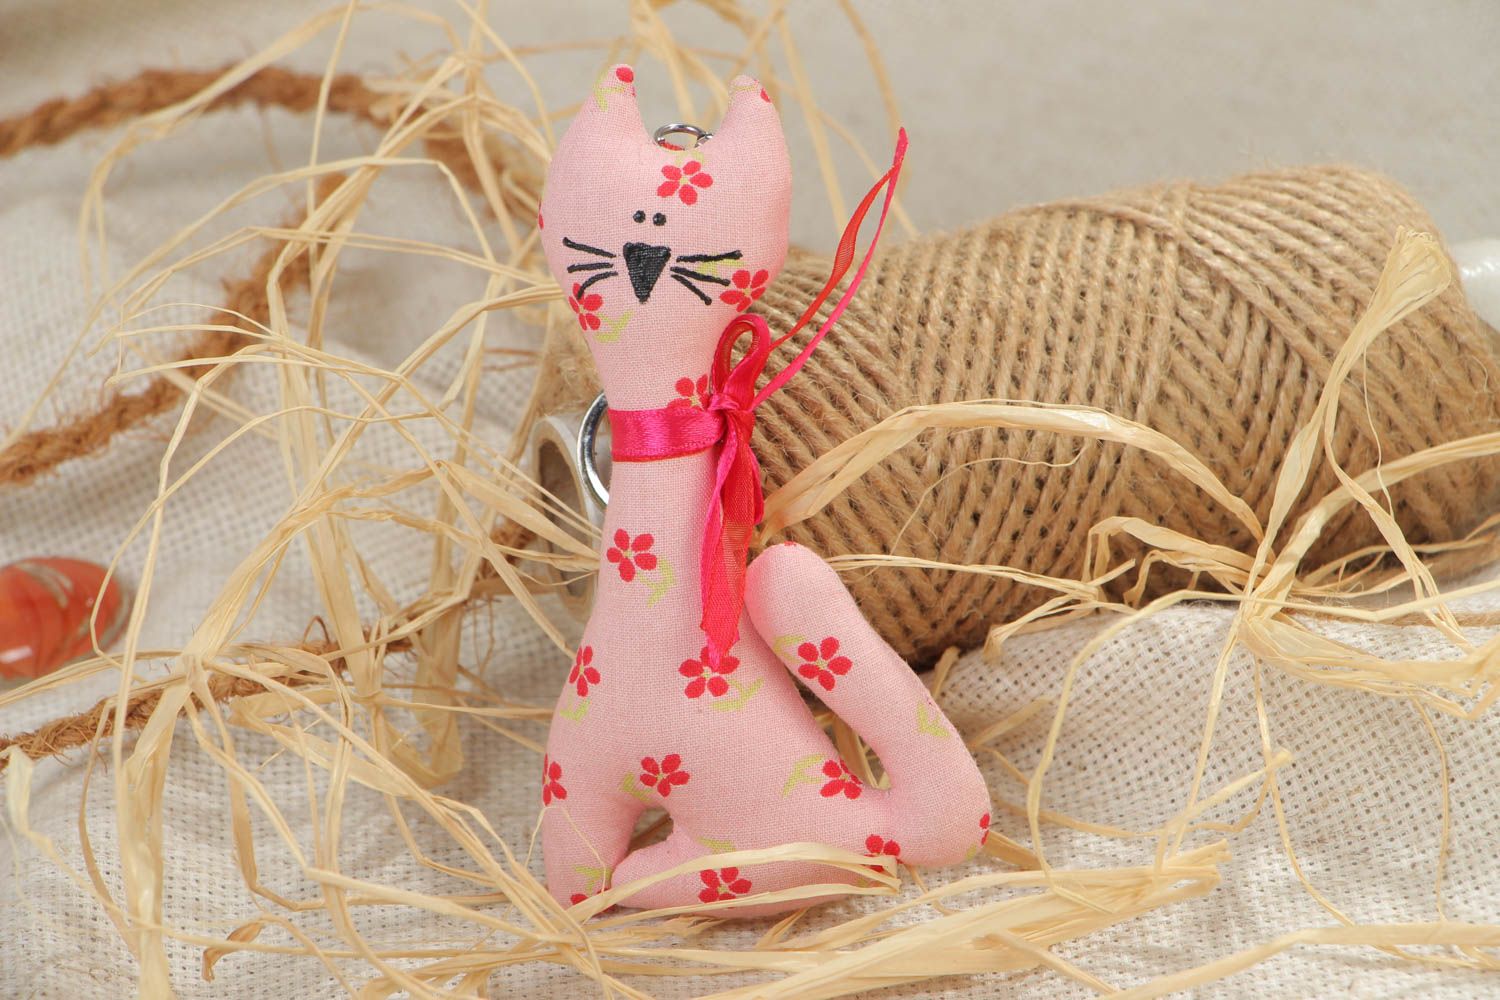 Мягкий текстильный брелок в виде котика ручной работы розовый в цветочек фото 1